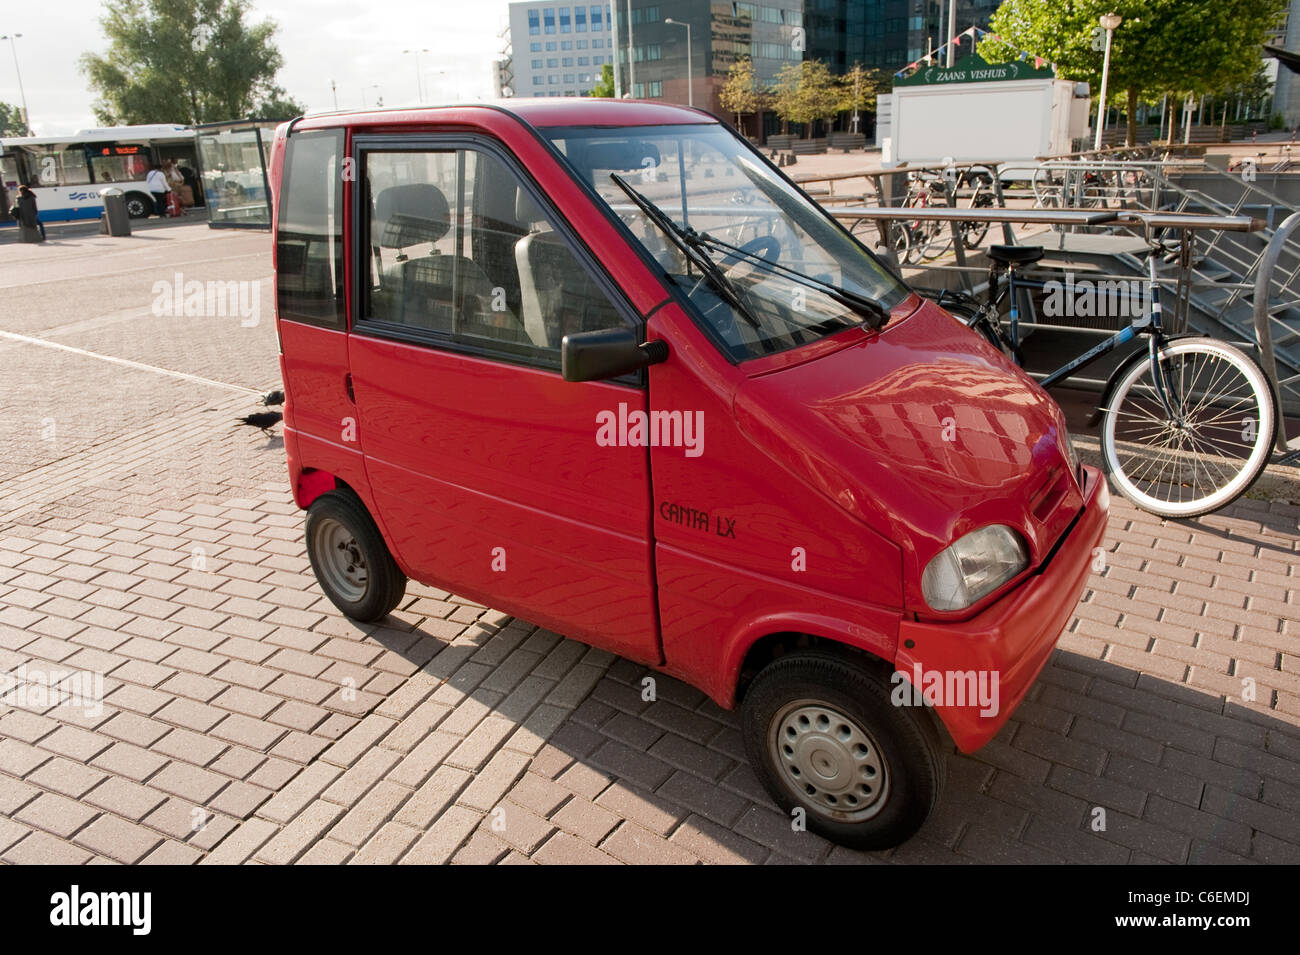 Kleine rote behinderten Auto Amsterdam Holland Niederlande Europa  Stockfotografie - Alamy